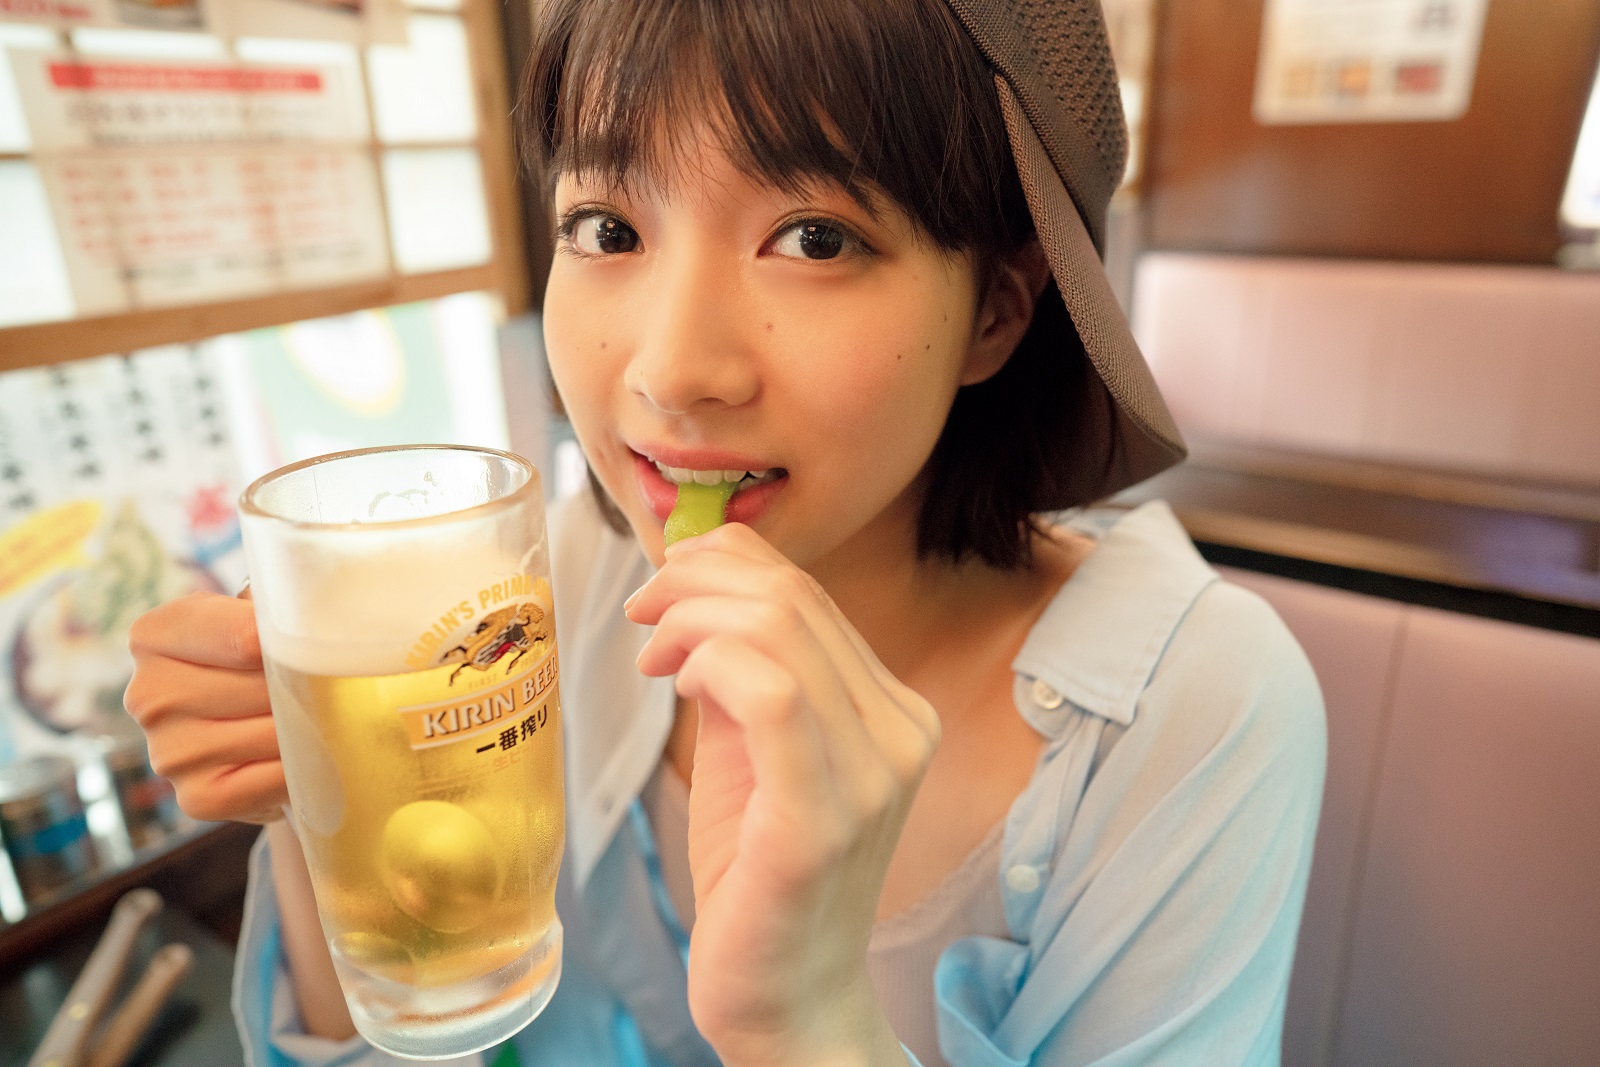 注目の女優 坂ノ上茜が1st写真集 あかねいろ をリリース らしさ 全開のメイキング映像 コメントが到着 蜜柑通信